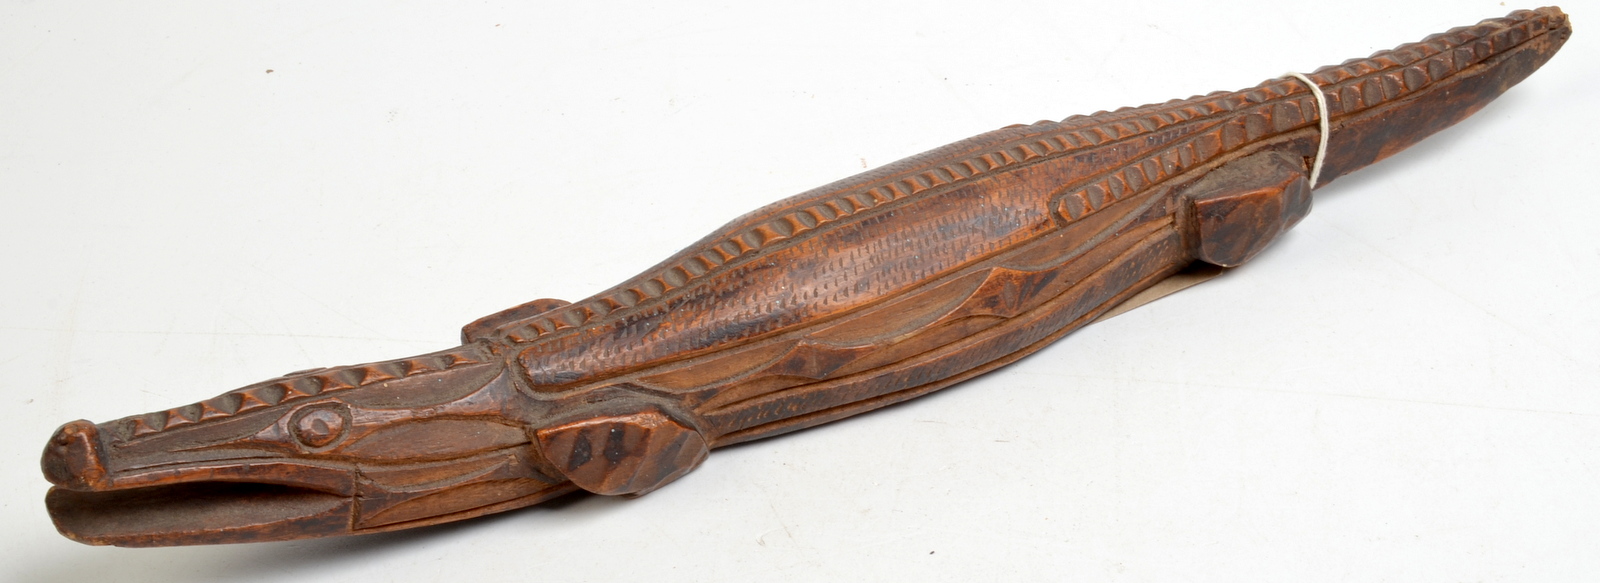 A carved wood prisoner of war crocodile.